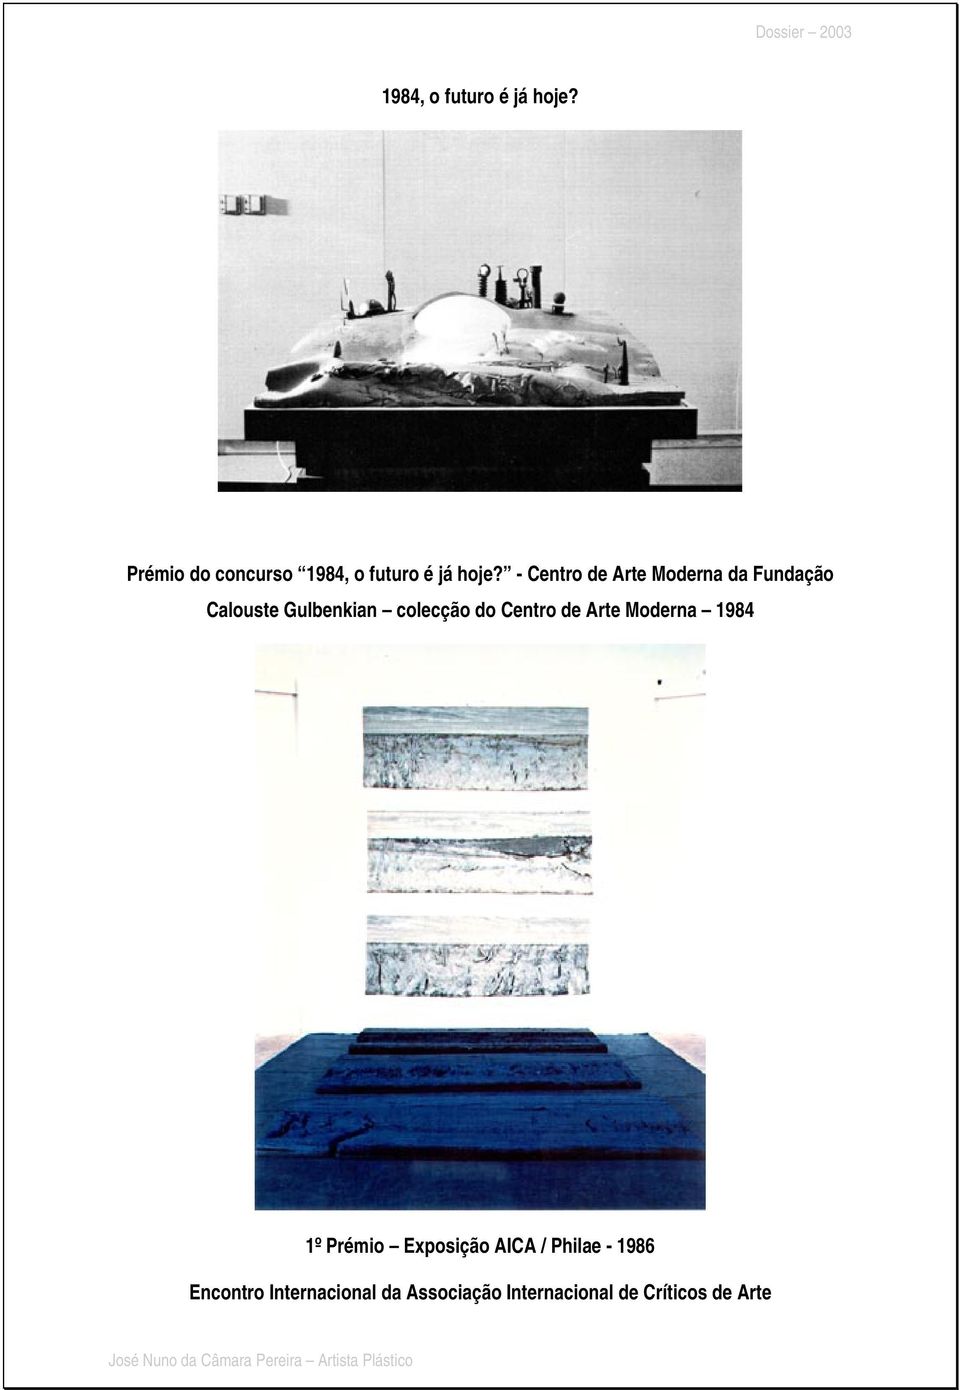 Centro de Arte Moderna 1984 1º Prémio Exposição AICA / Philae - 1986